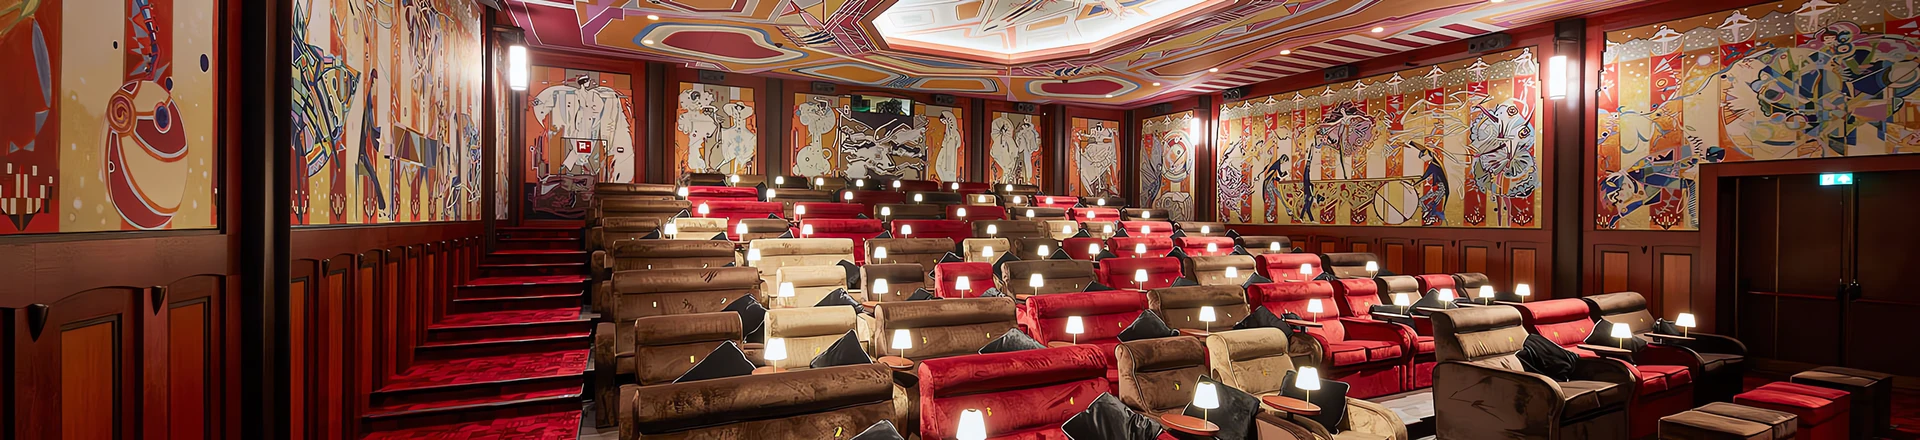 Audioinstalacje: Alcons w najpiękniejszym kinie na świecie - Pathe Tuschinski w Amsterdamie